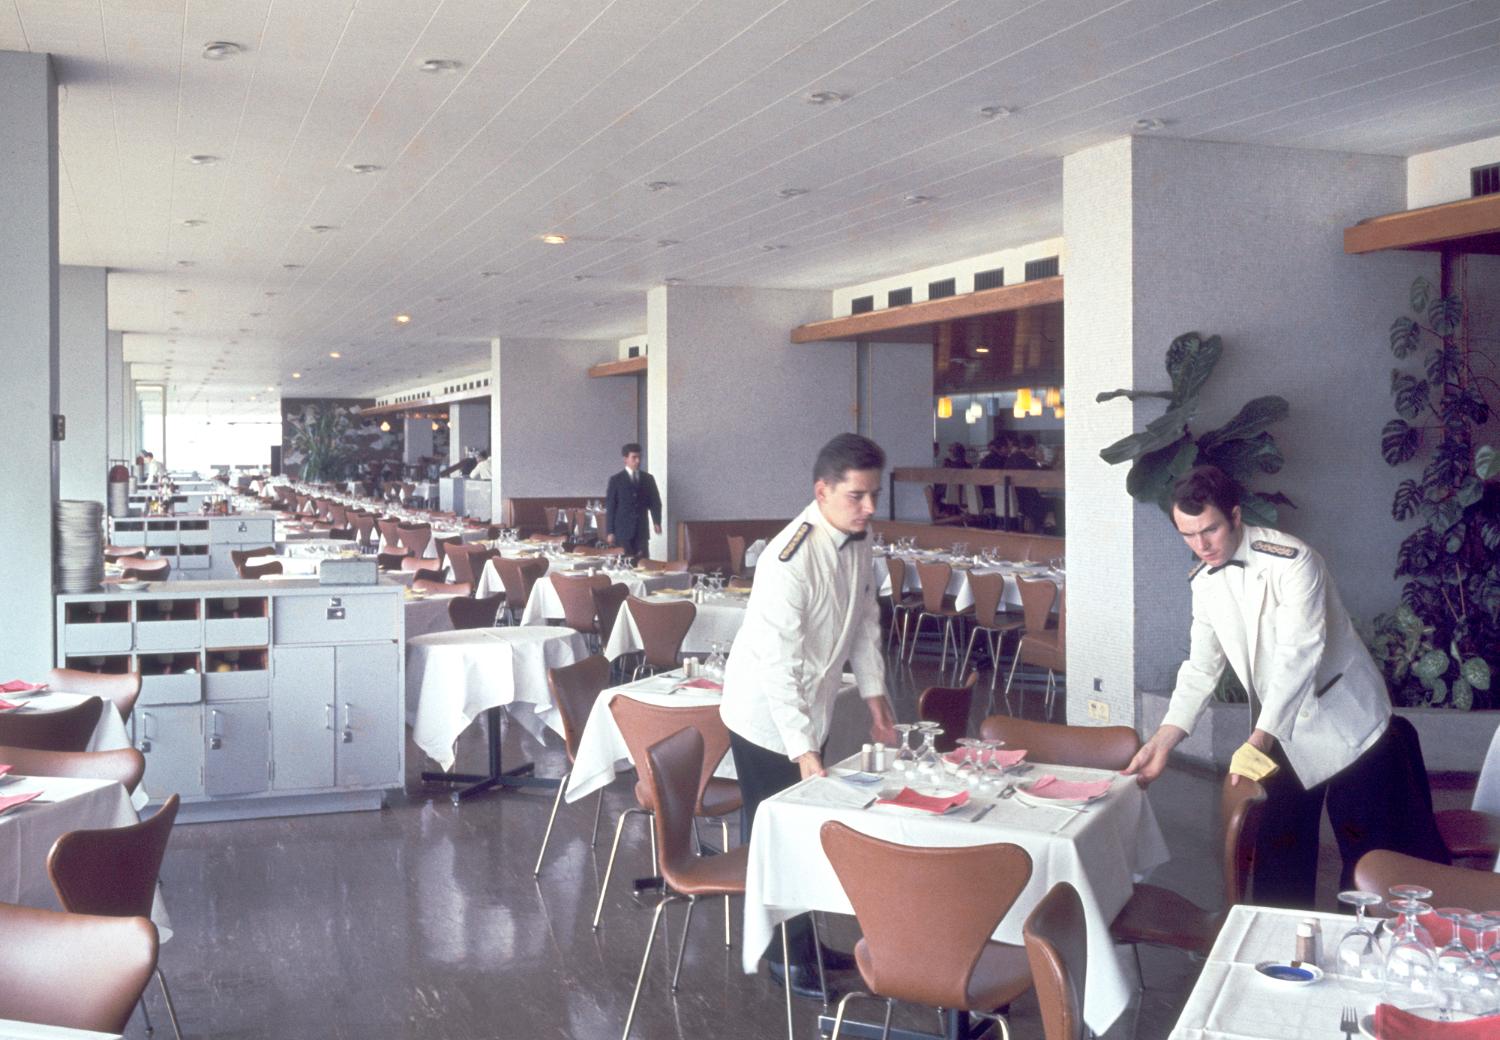 Les Installations terminales, Orly 4 dans les années 1960